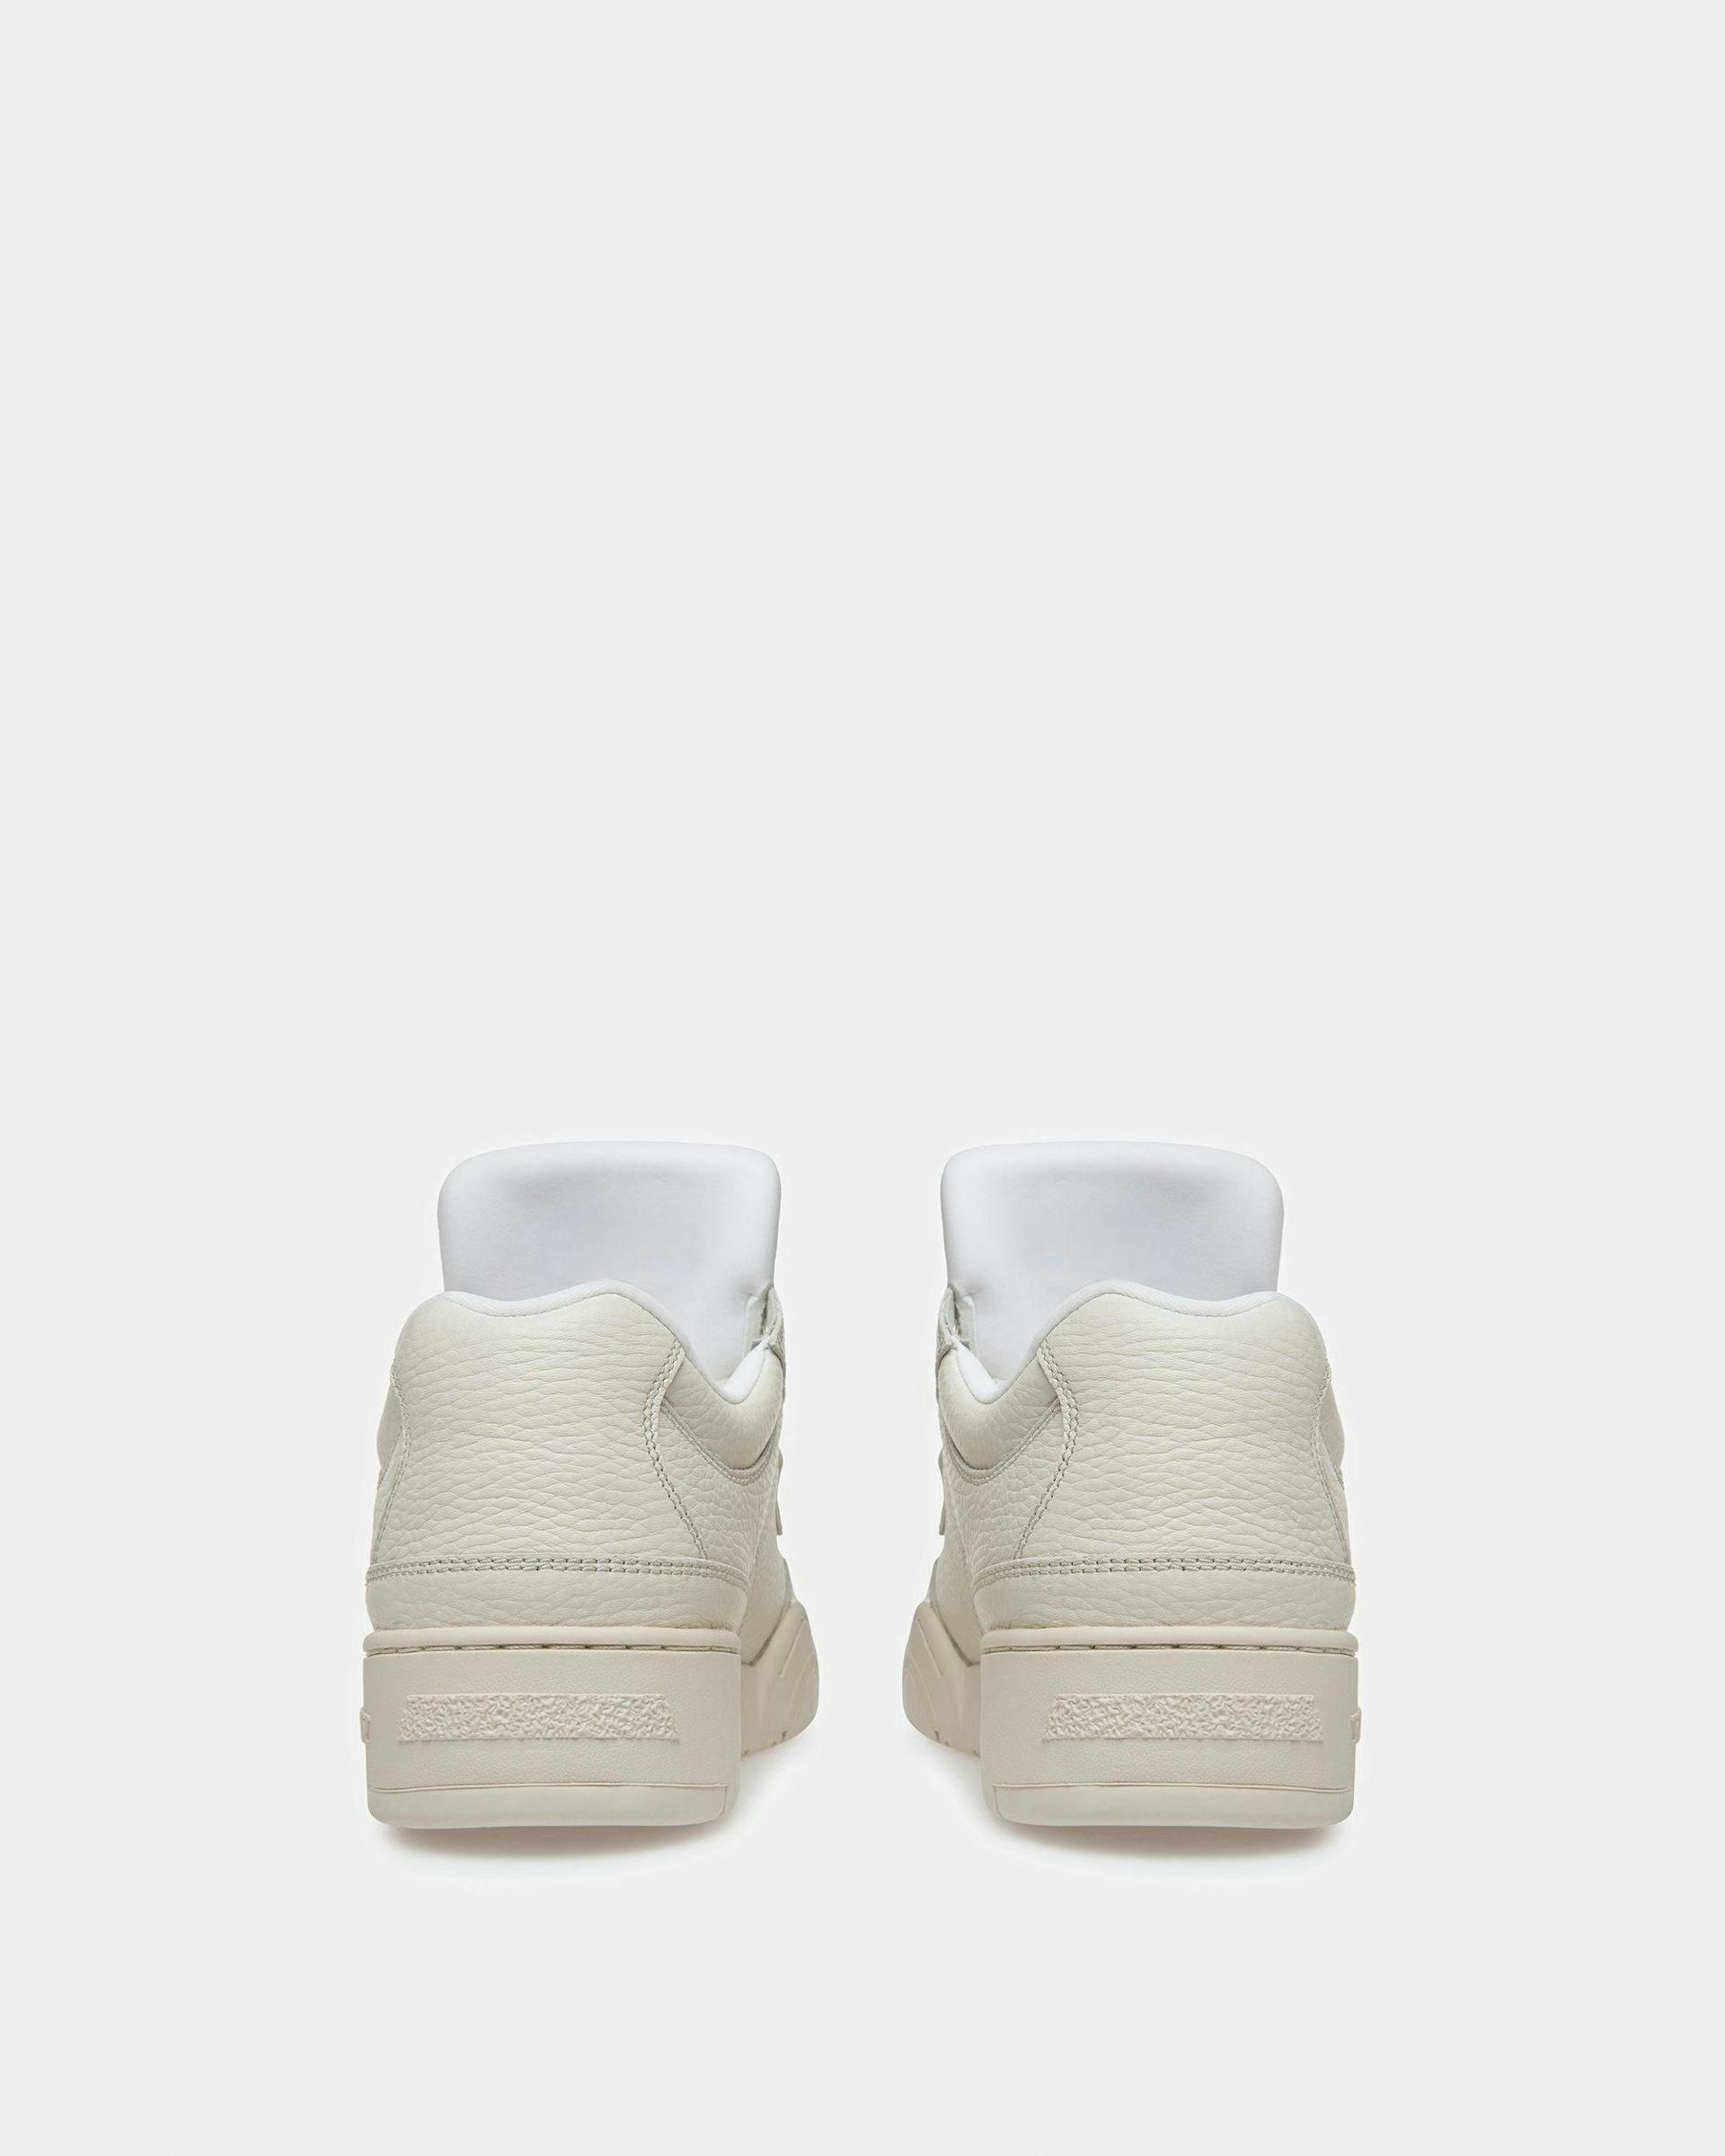 Kiro Leather Sneakers In Dusty White - Women's - Bally - 04